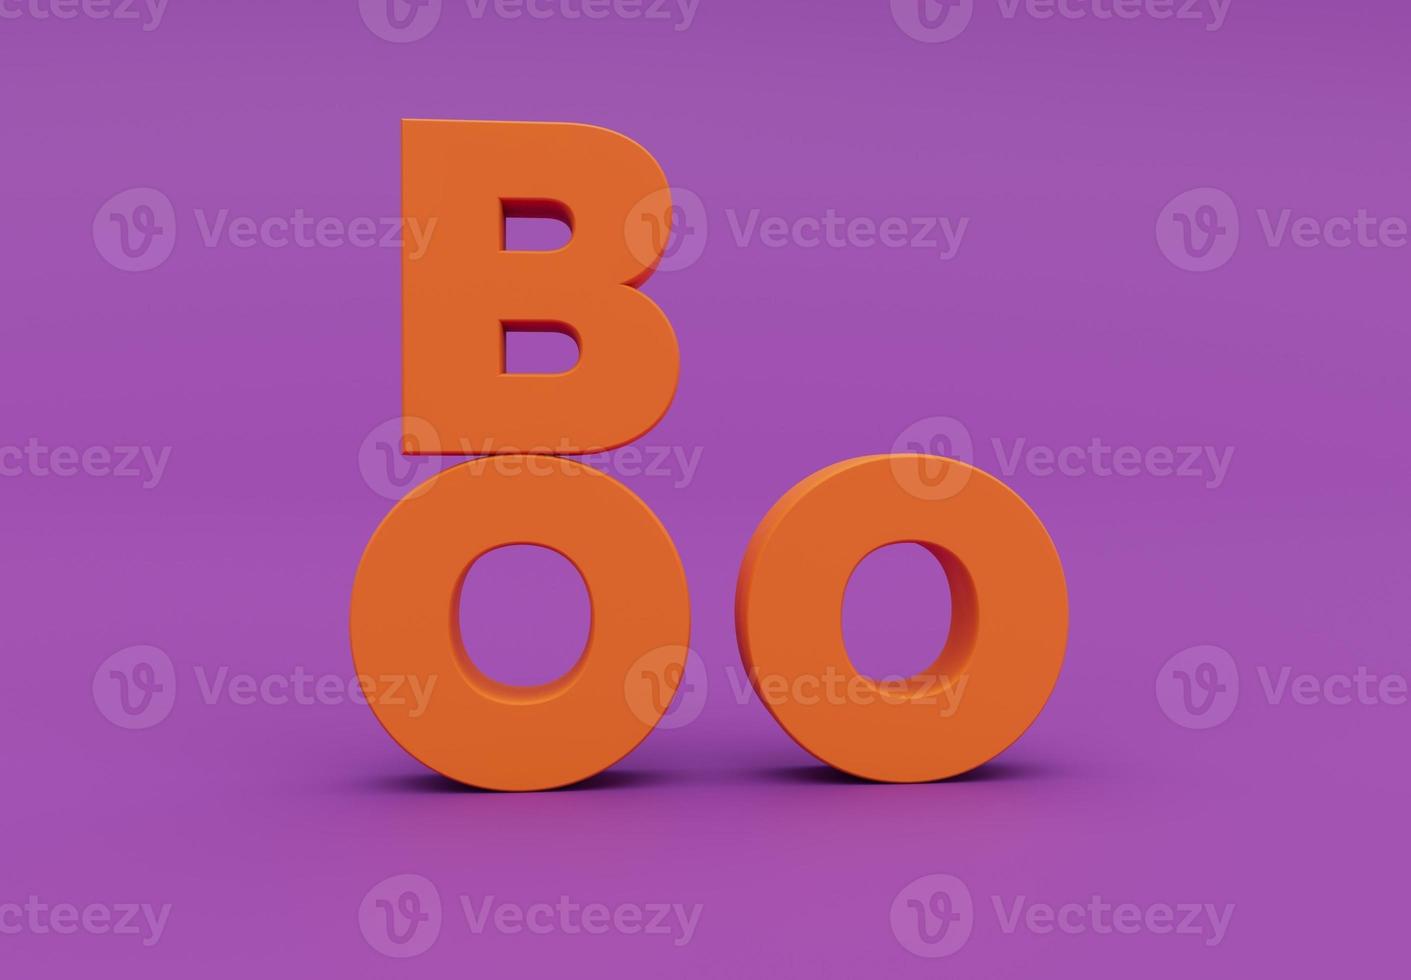 boo feliz día de halloween, diseño de letras sobre fondo púrpura, truco o trato, render 3d foto